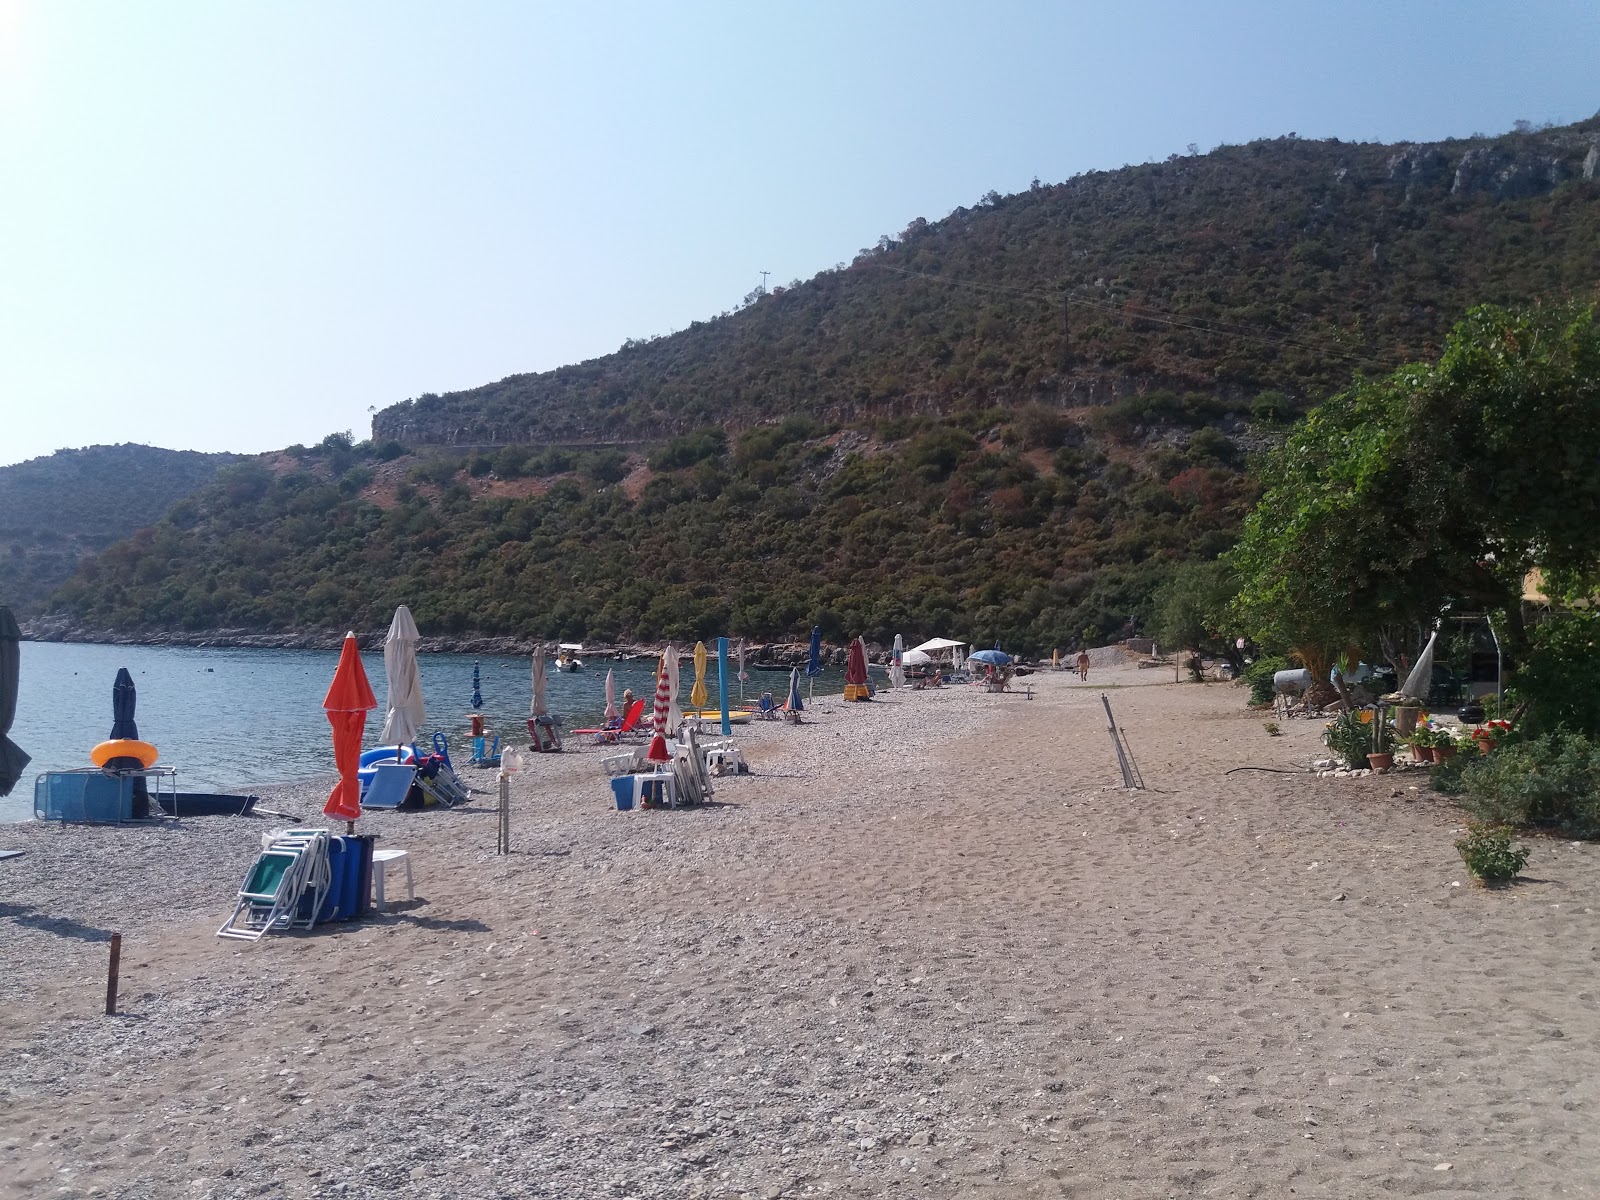 Fotografie cu Rempondina beach cu o suprafață de apă pură albastră